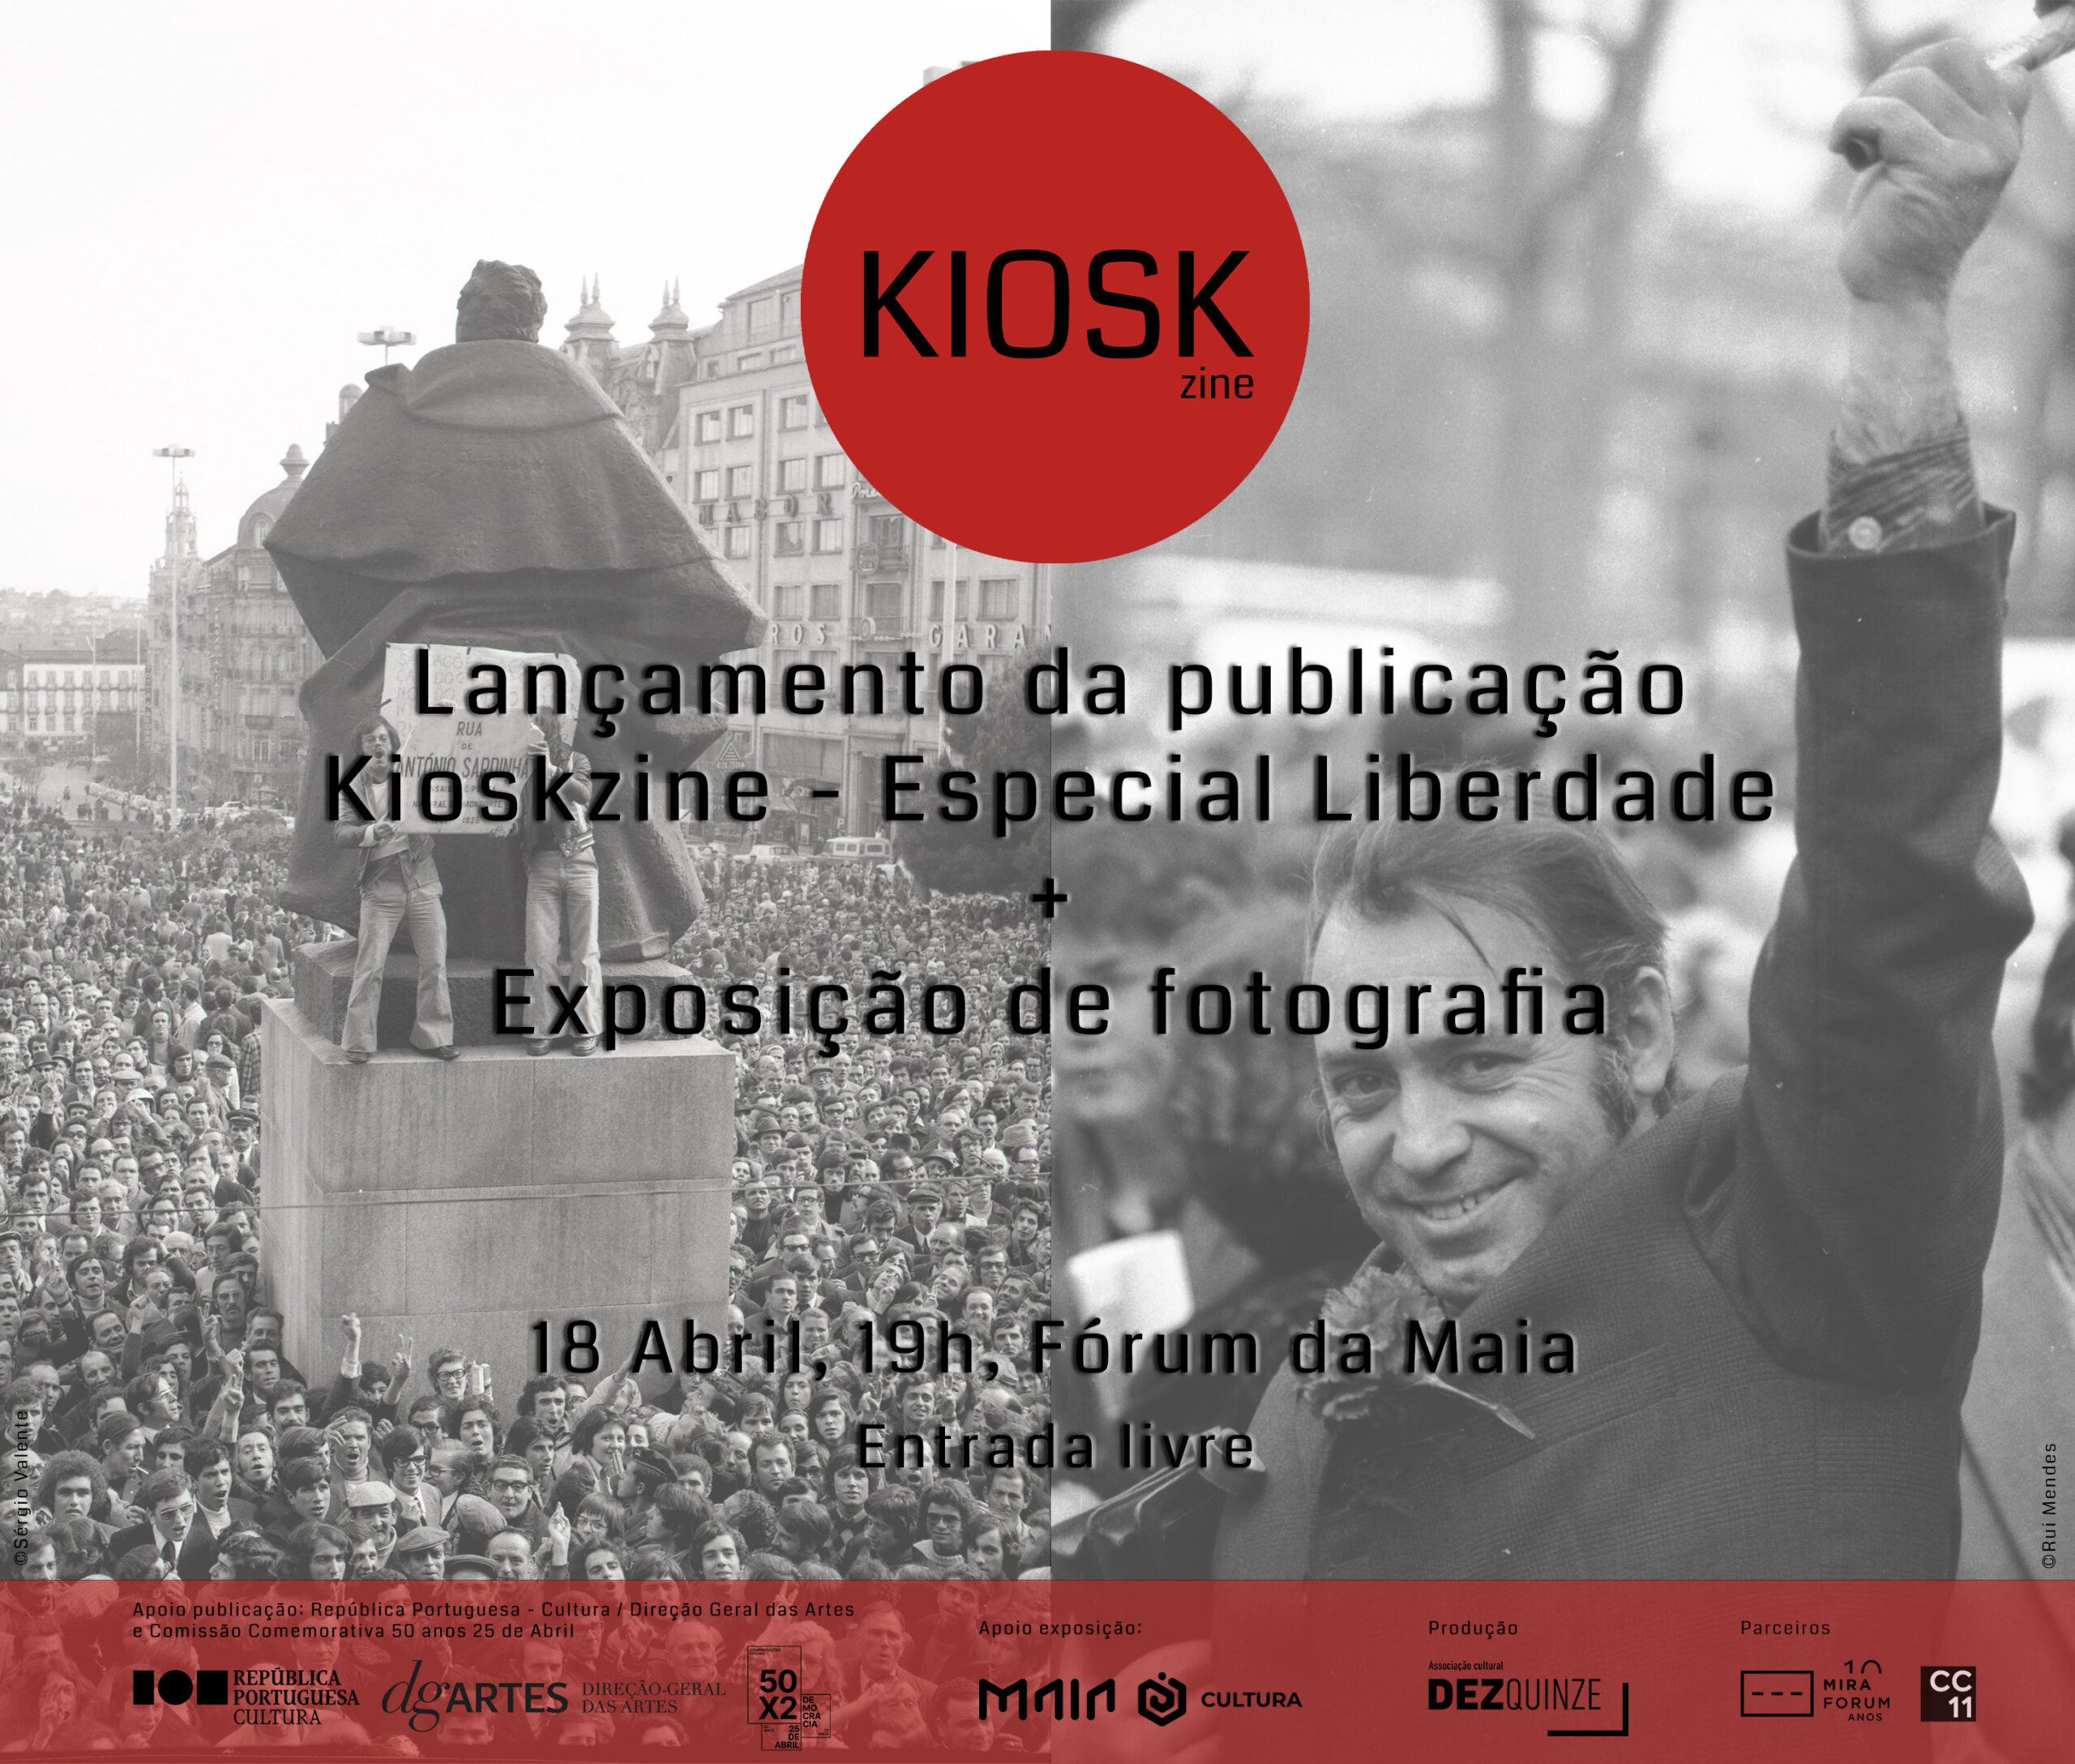 Capa Oficial do Evento Lançamento da publicação e exposição fotográfica da Kioskzine - Especial Liberdade